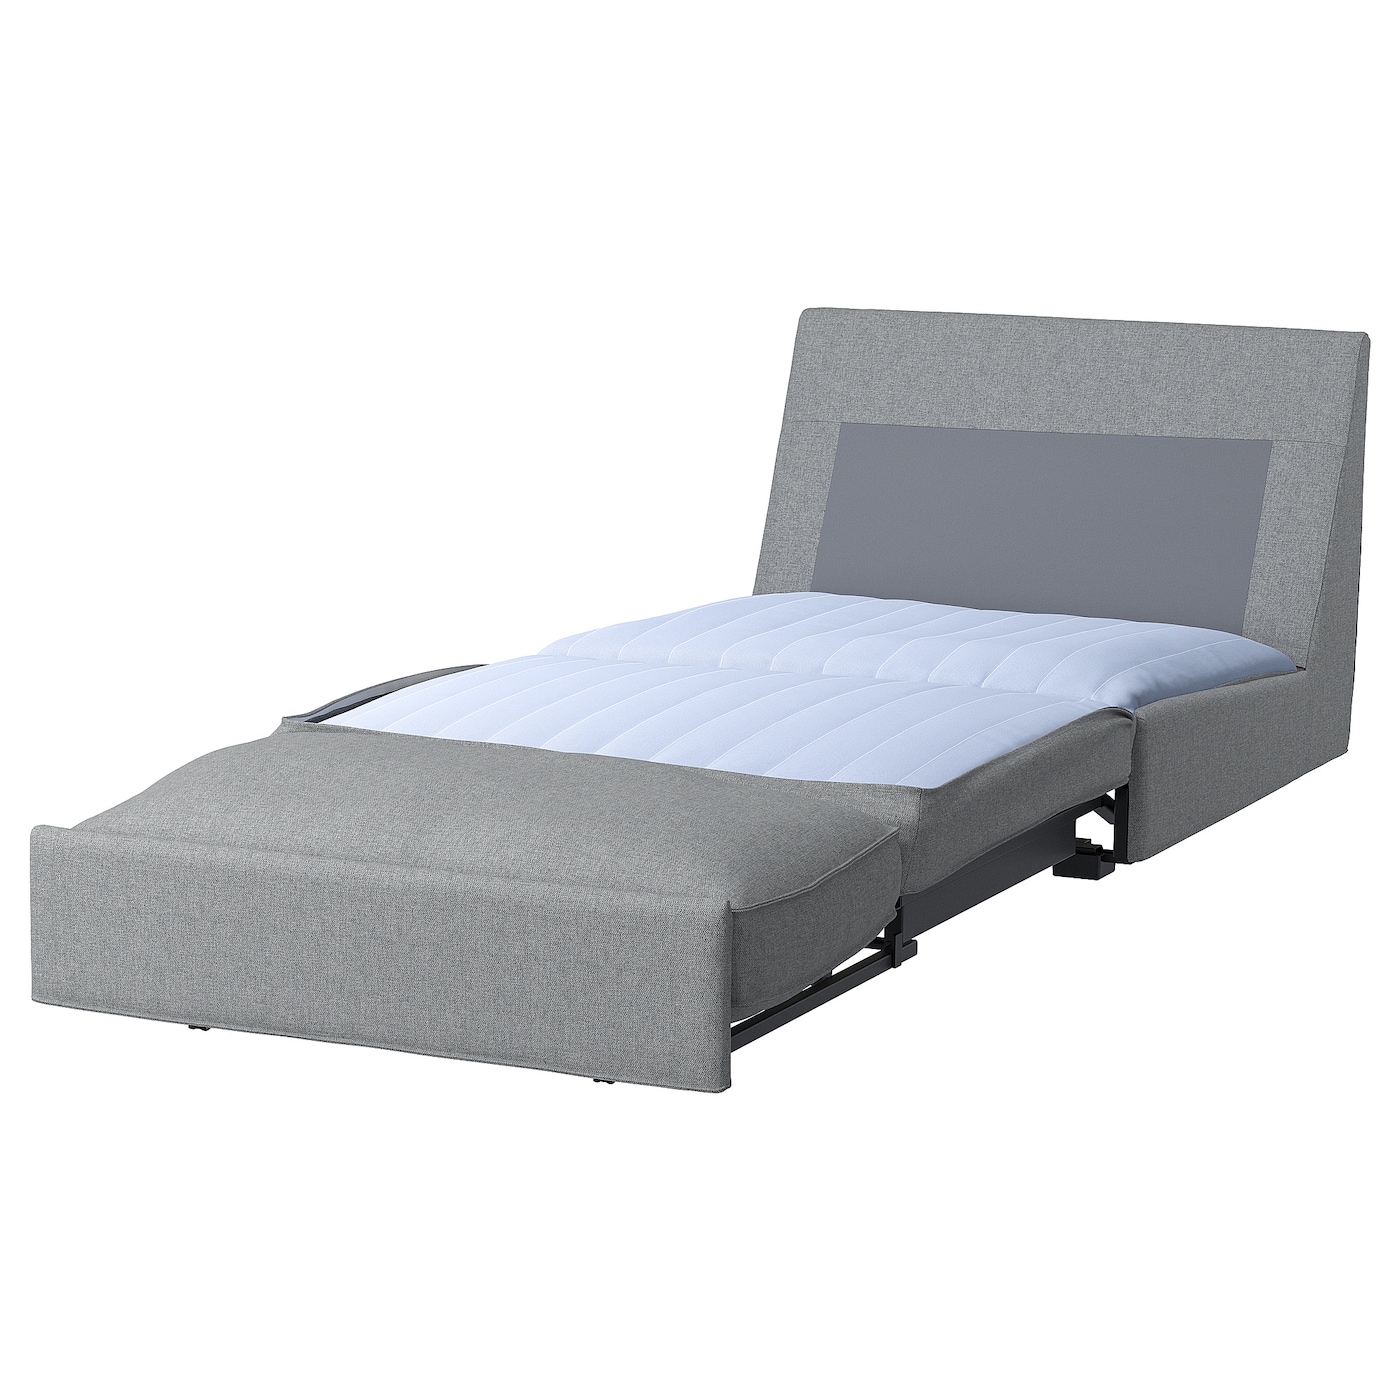 диван кровать портленд серый велюр КИВИК 1-местный диван-кровать, Тибблби бежевый/серый KIVIK IKEA